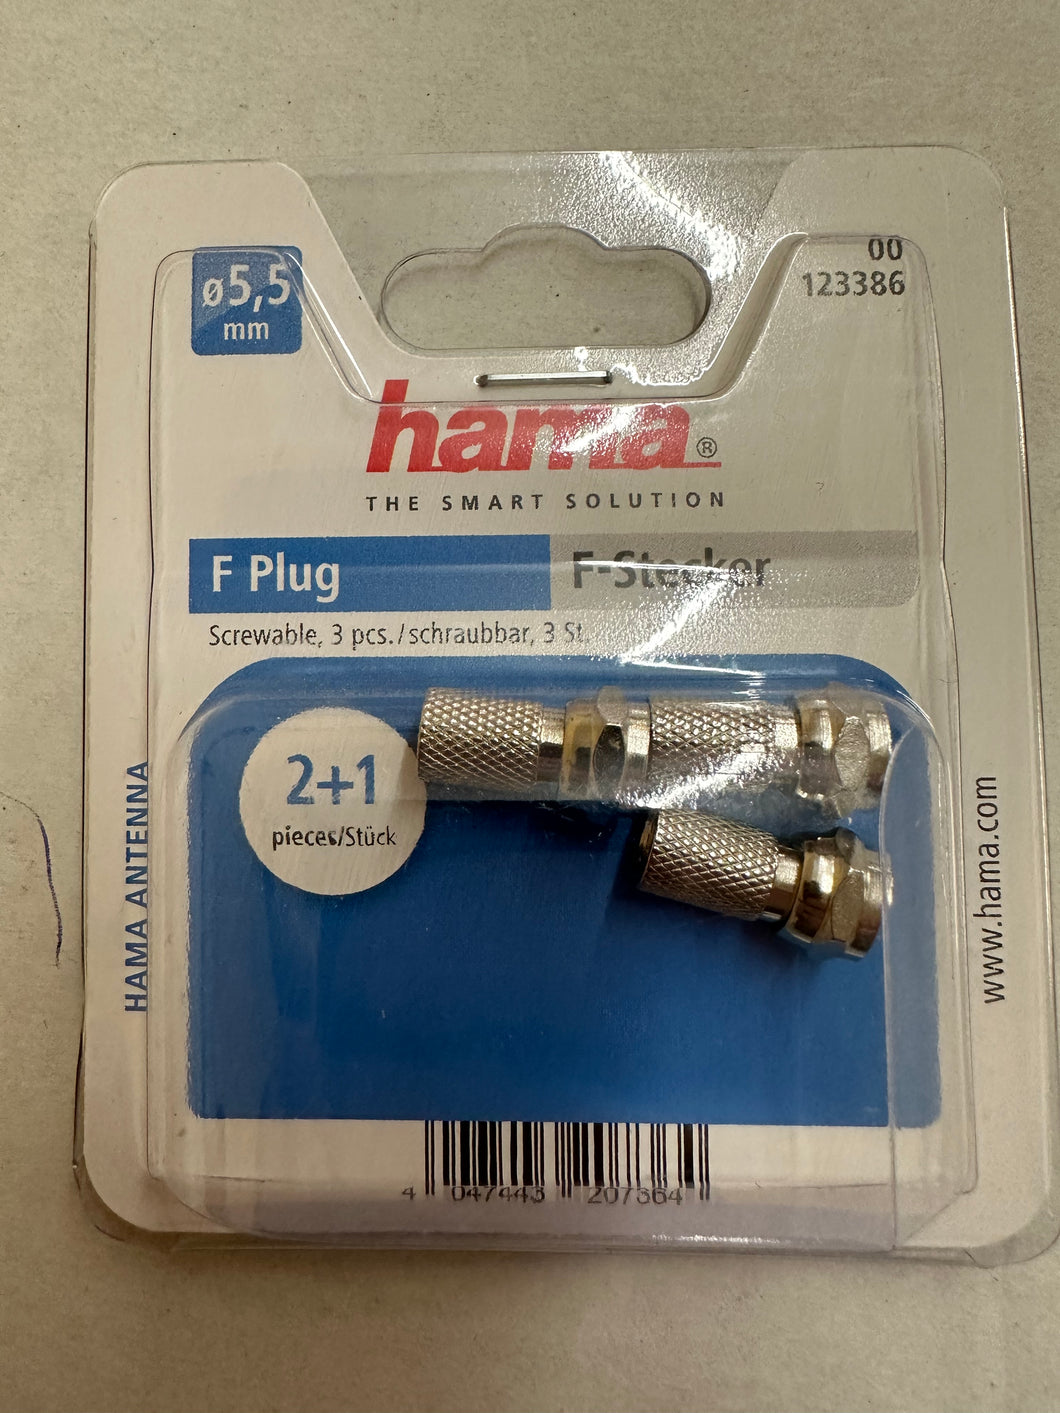 Hama(123386) F-Stecker, 5,5 mm, schraubbar, 3 Stück